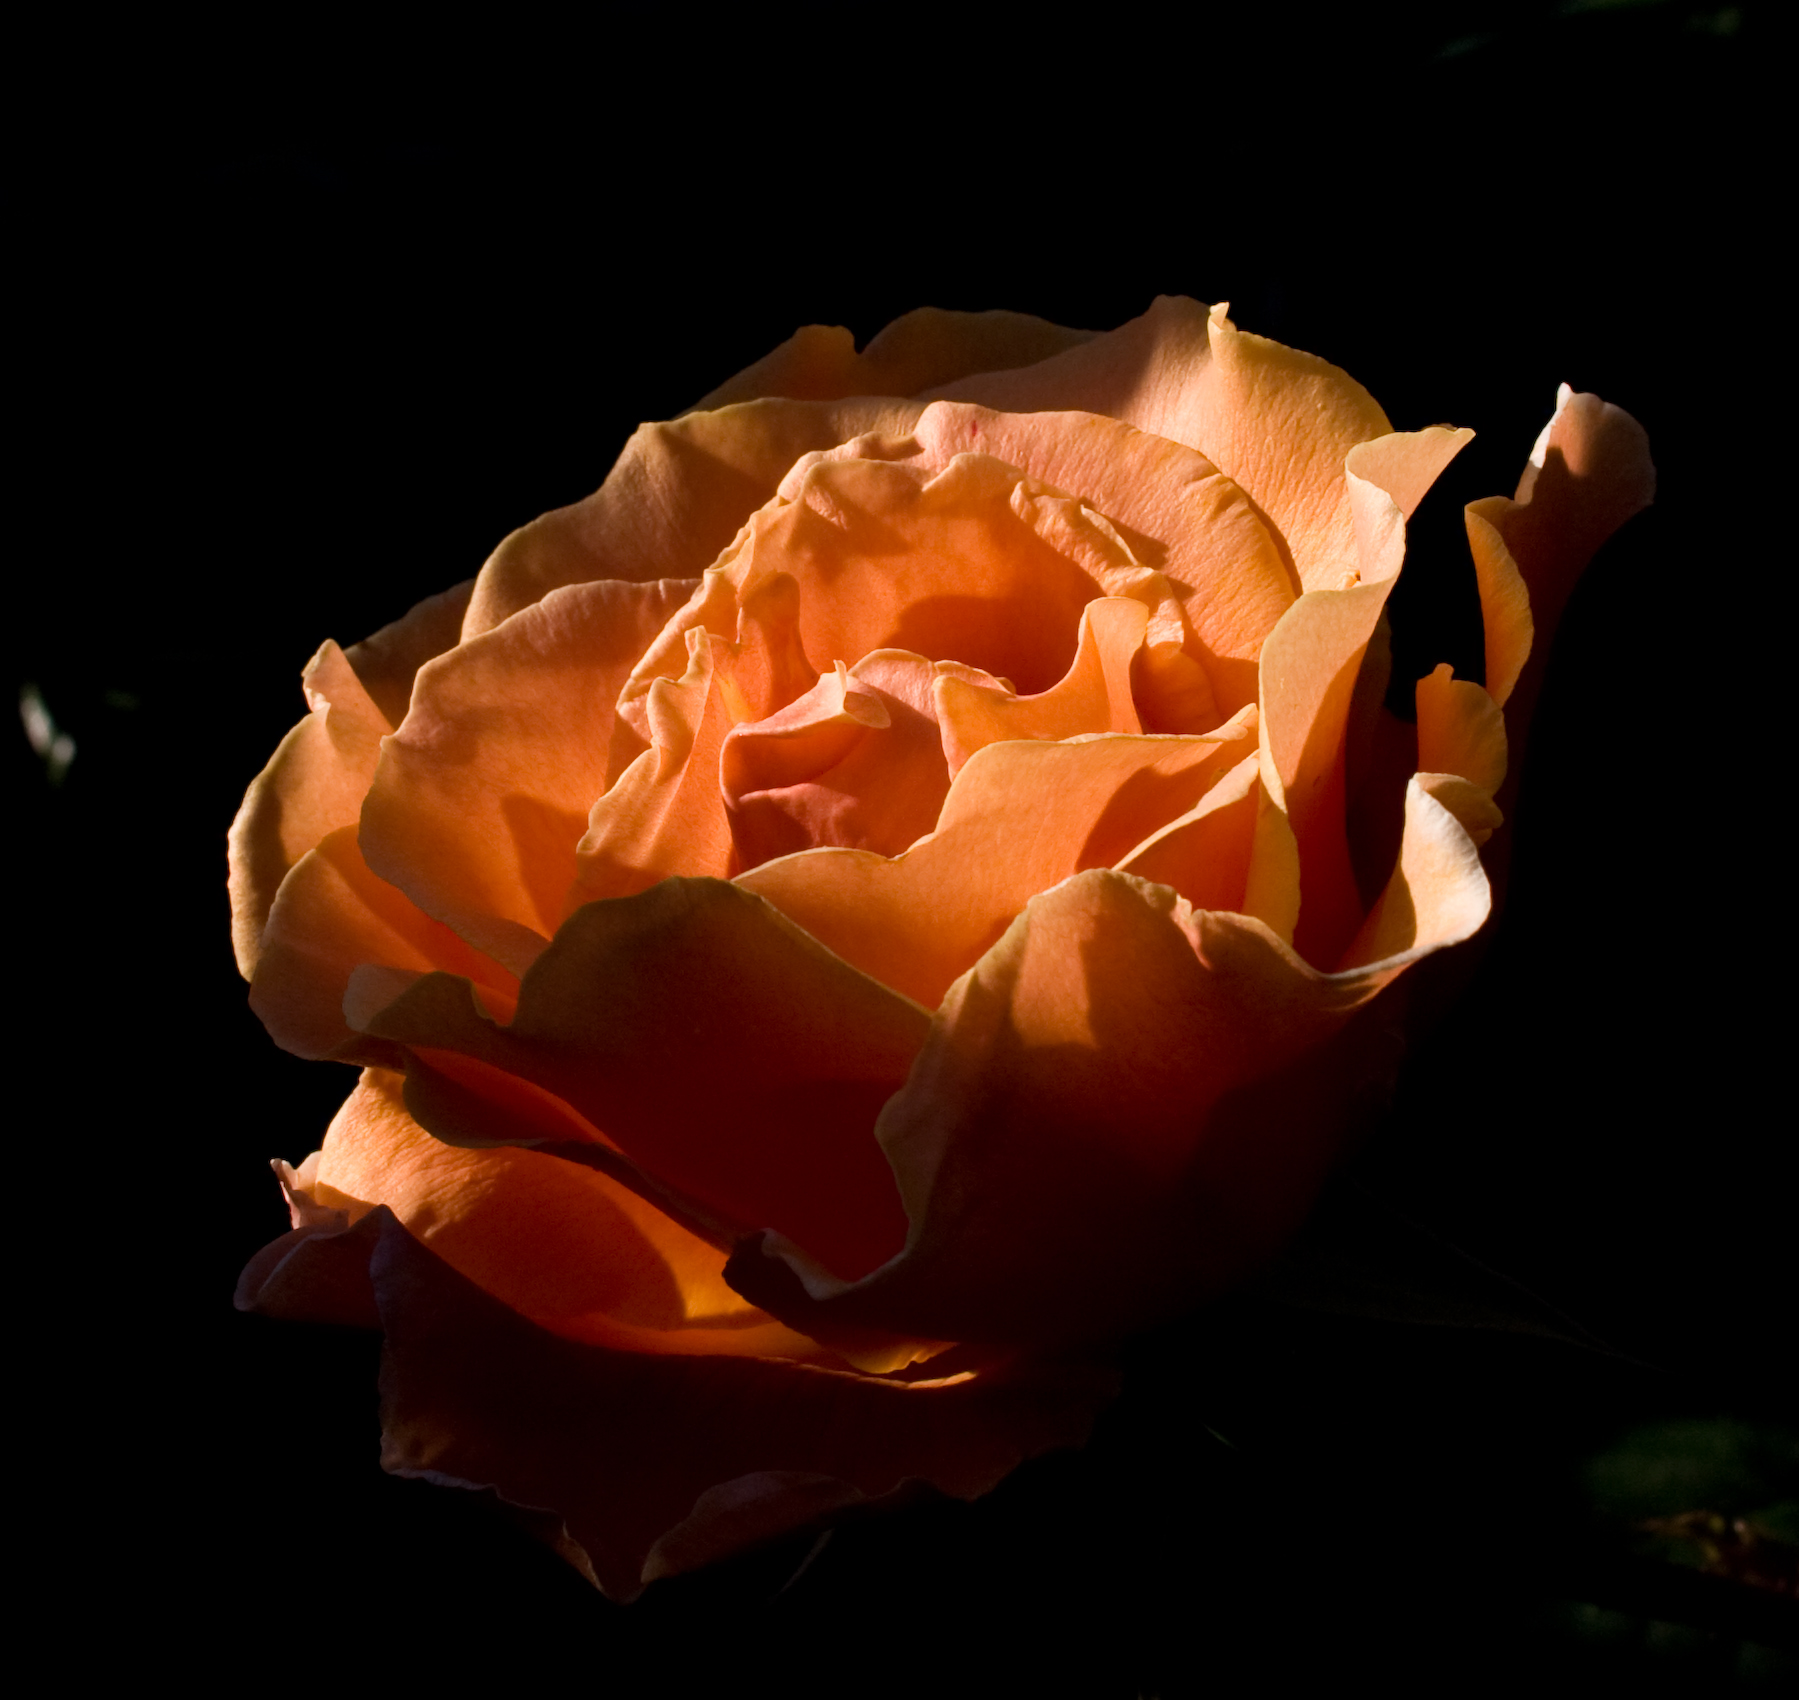 Sunlit Royal Sunset rose blossom